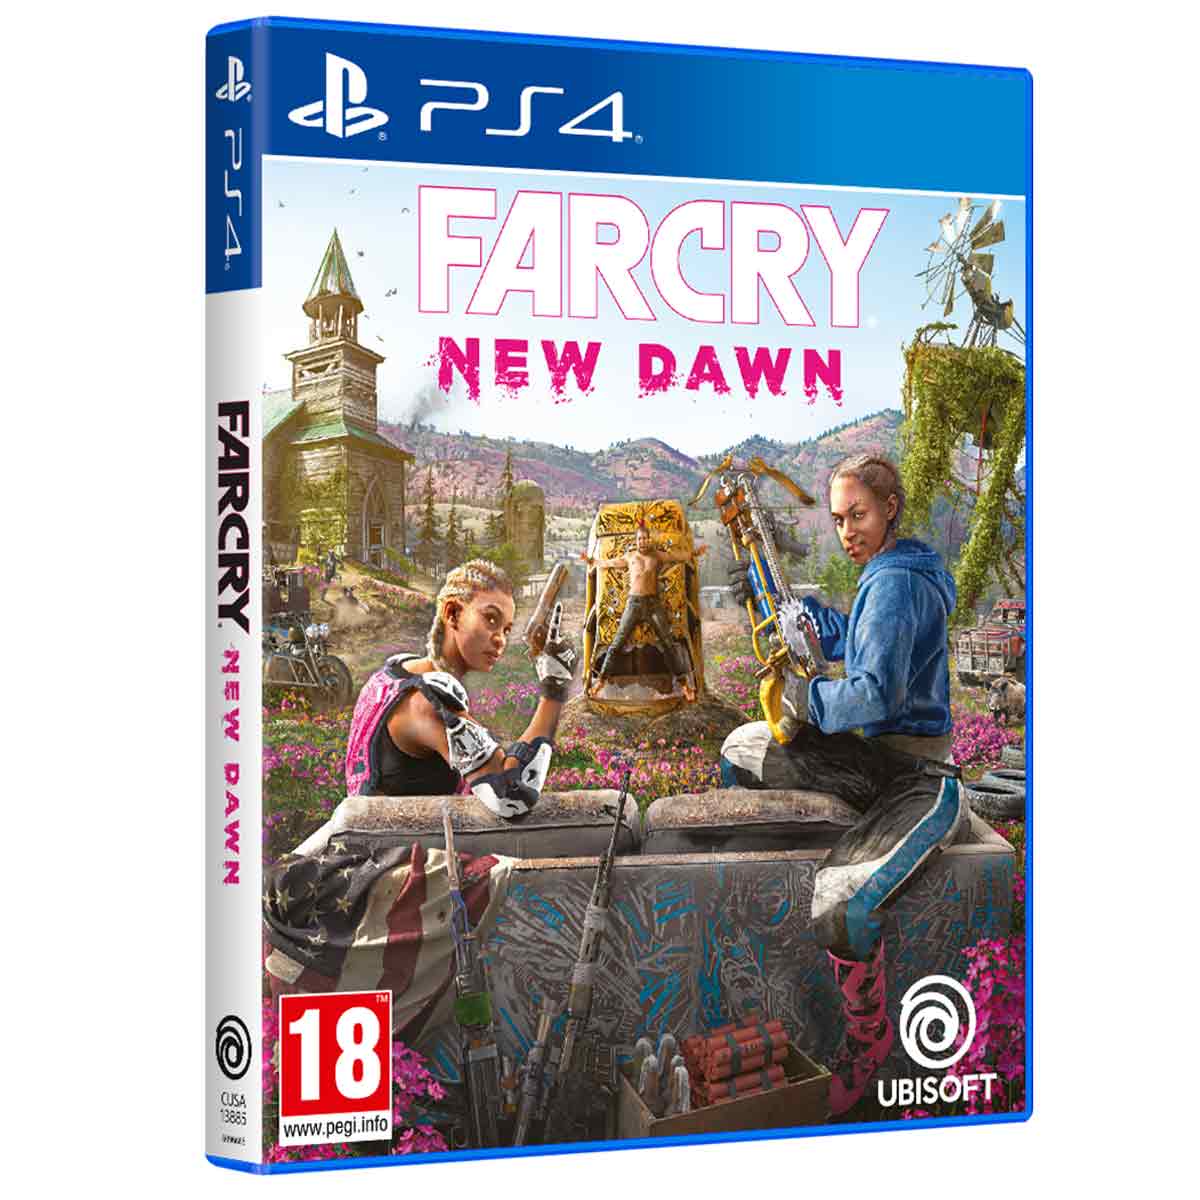 Photos - Game Ubisoft Far Cry New Dawn - PlayStation 4 